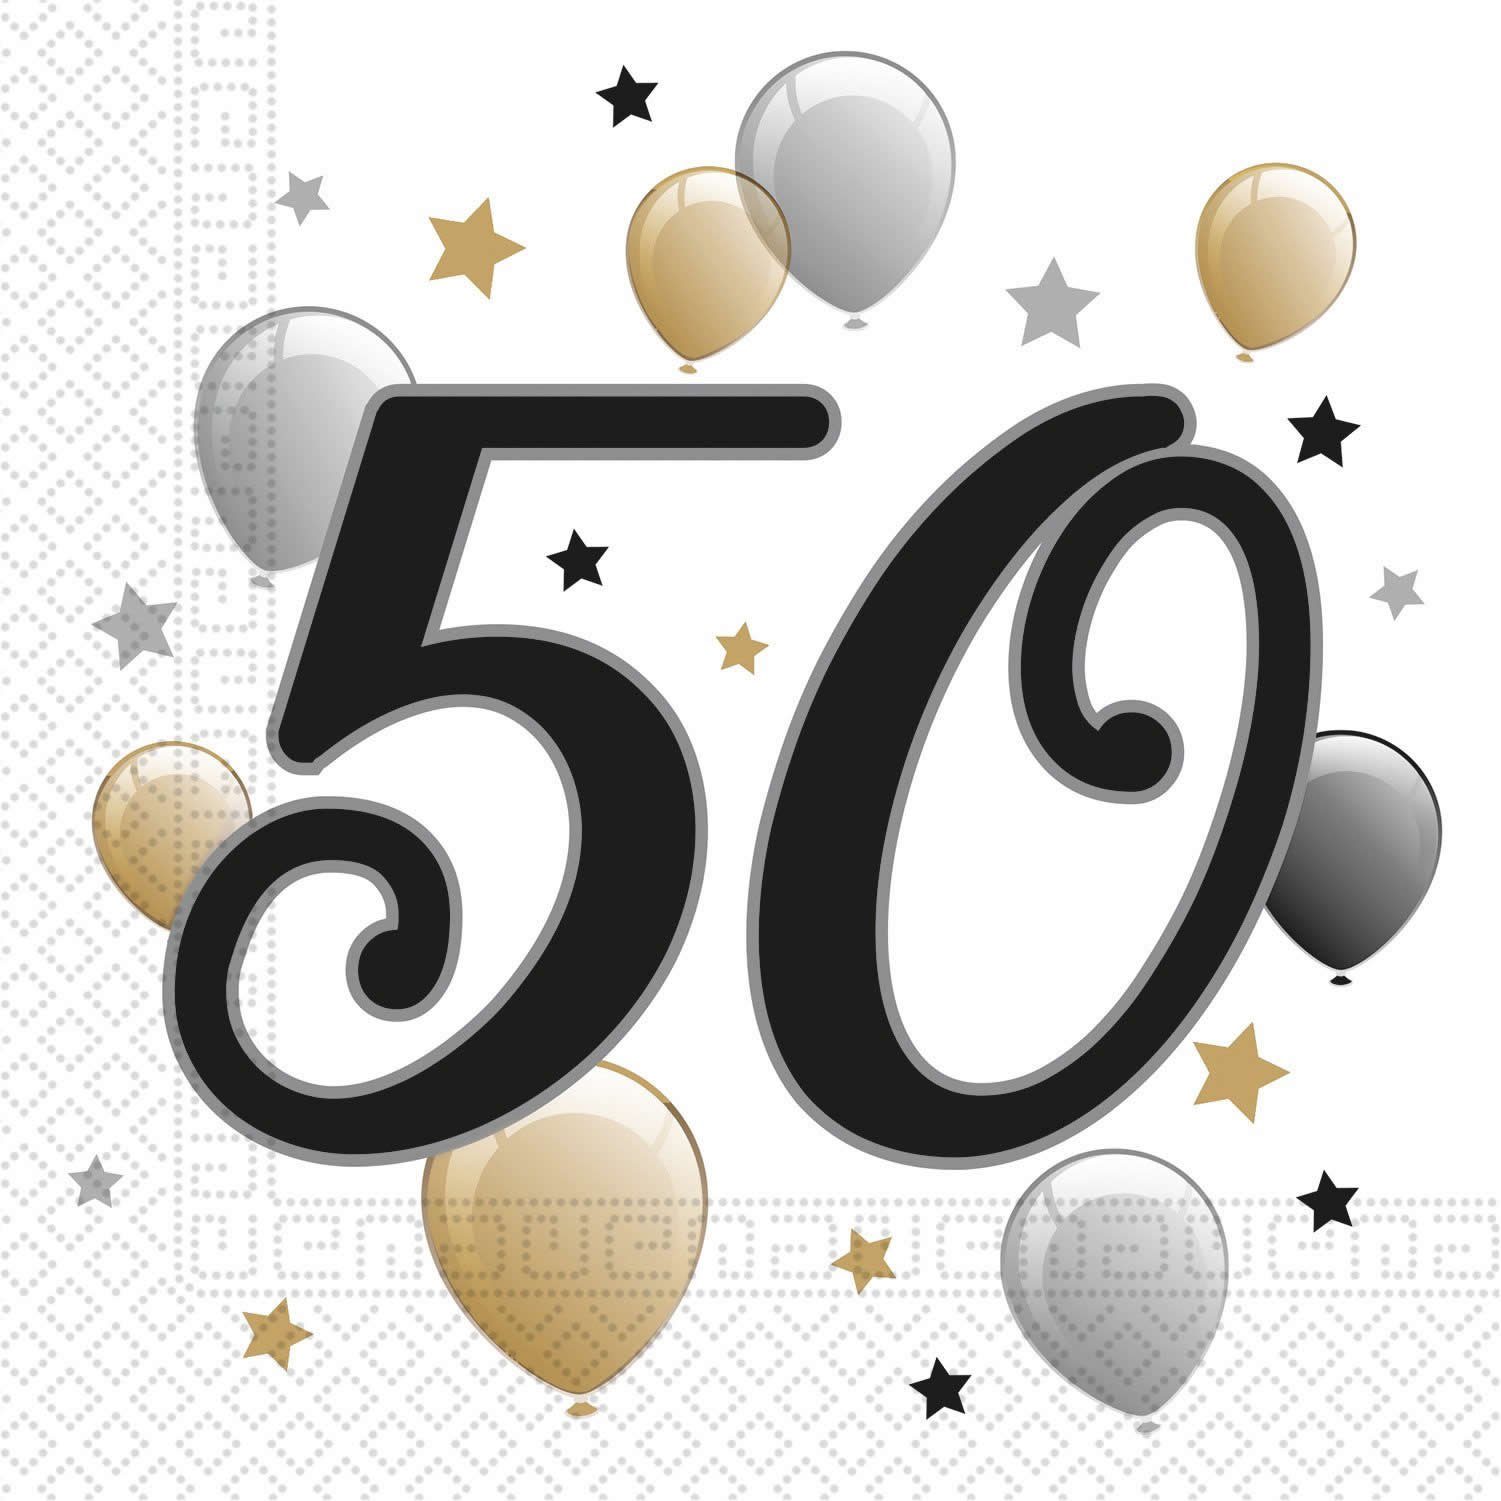 Motto Deko Pappe Einweggeschirr-Set Procos 8 Set Personen, (96-tlg), Party Meilenstein 50 Geburtstag 96-tlg Birthday Happy